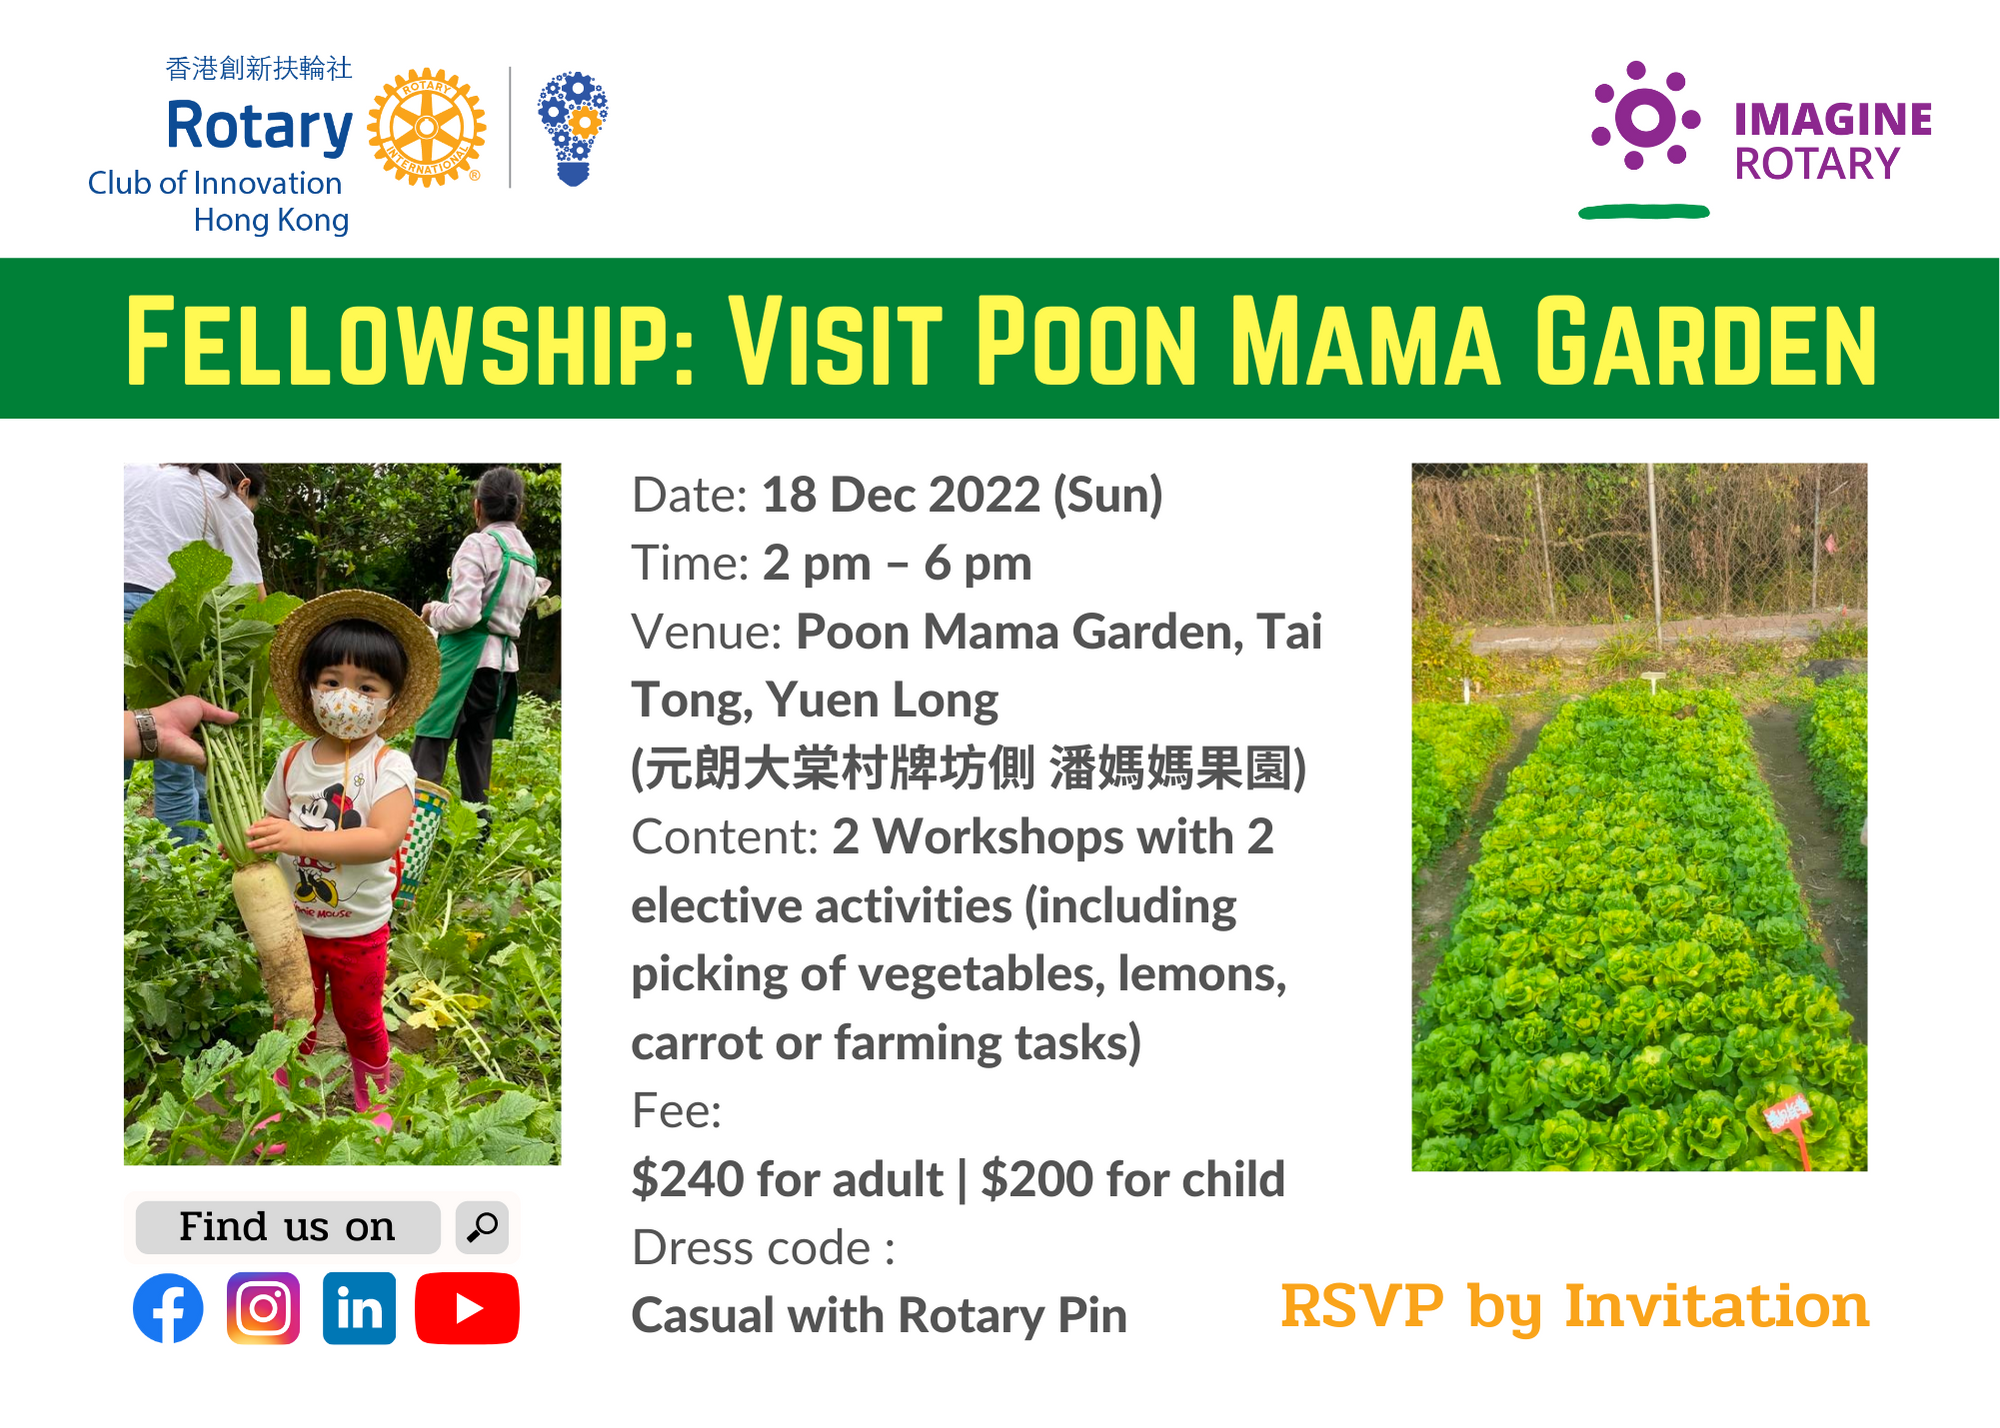 Visit Poon Mama Garden (18 Dec 2022)